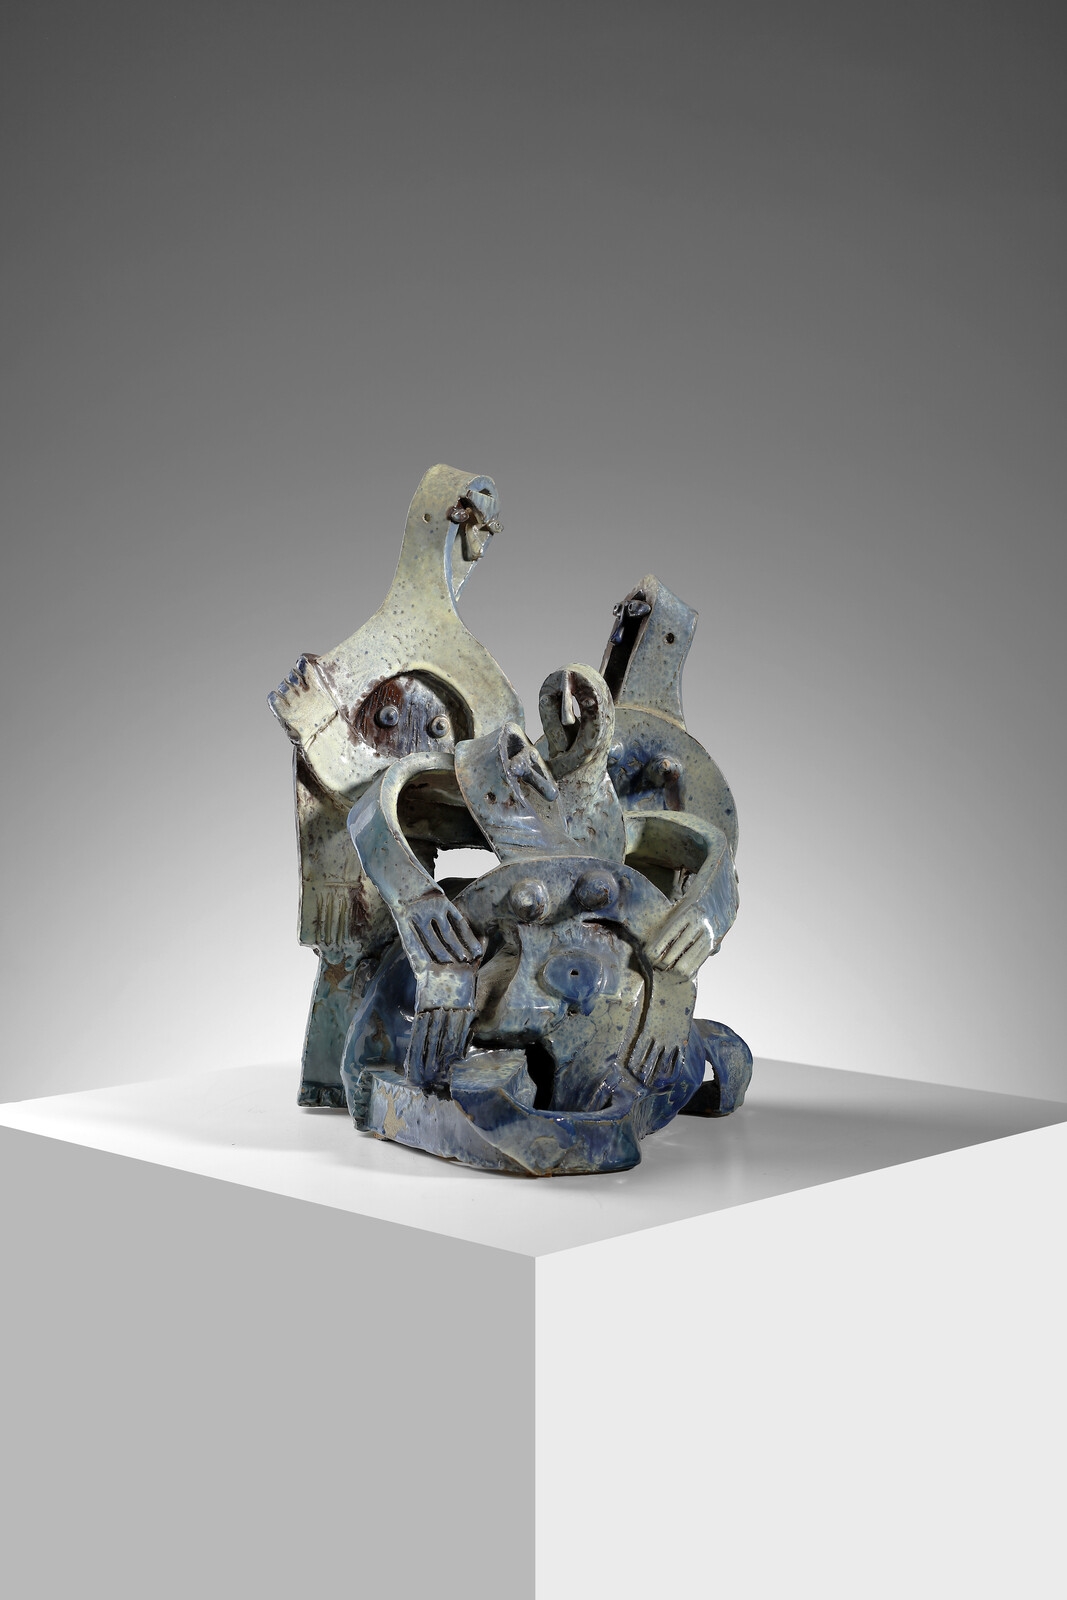 Sculpture with anthropomorphic figures - Ibrahim Kodra